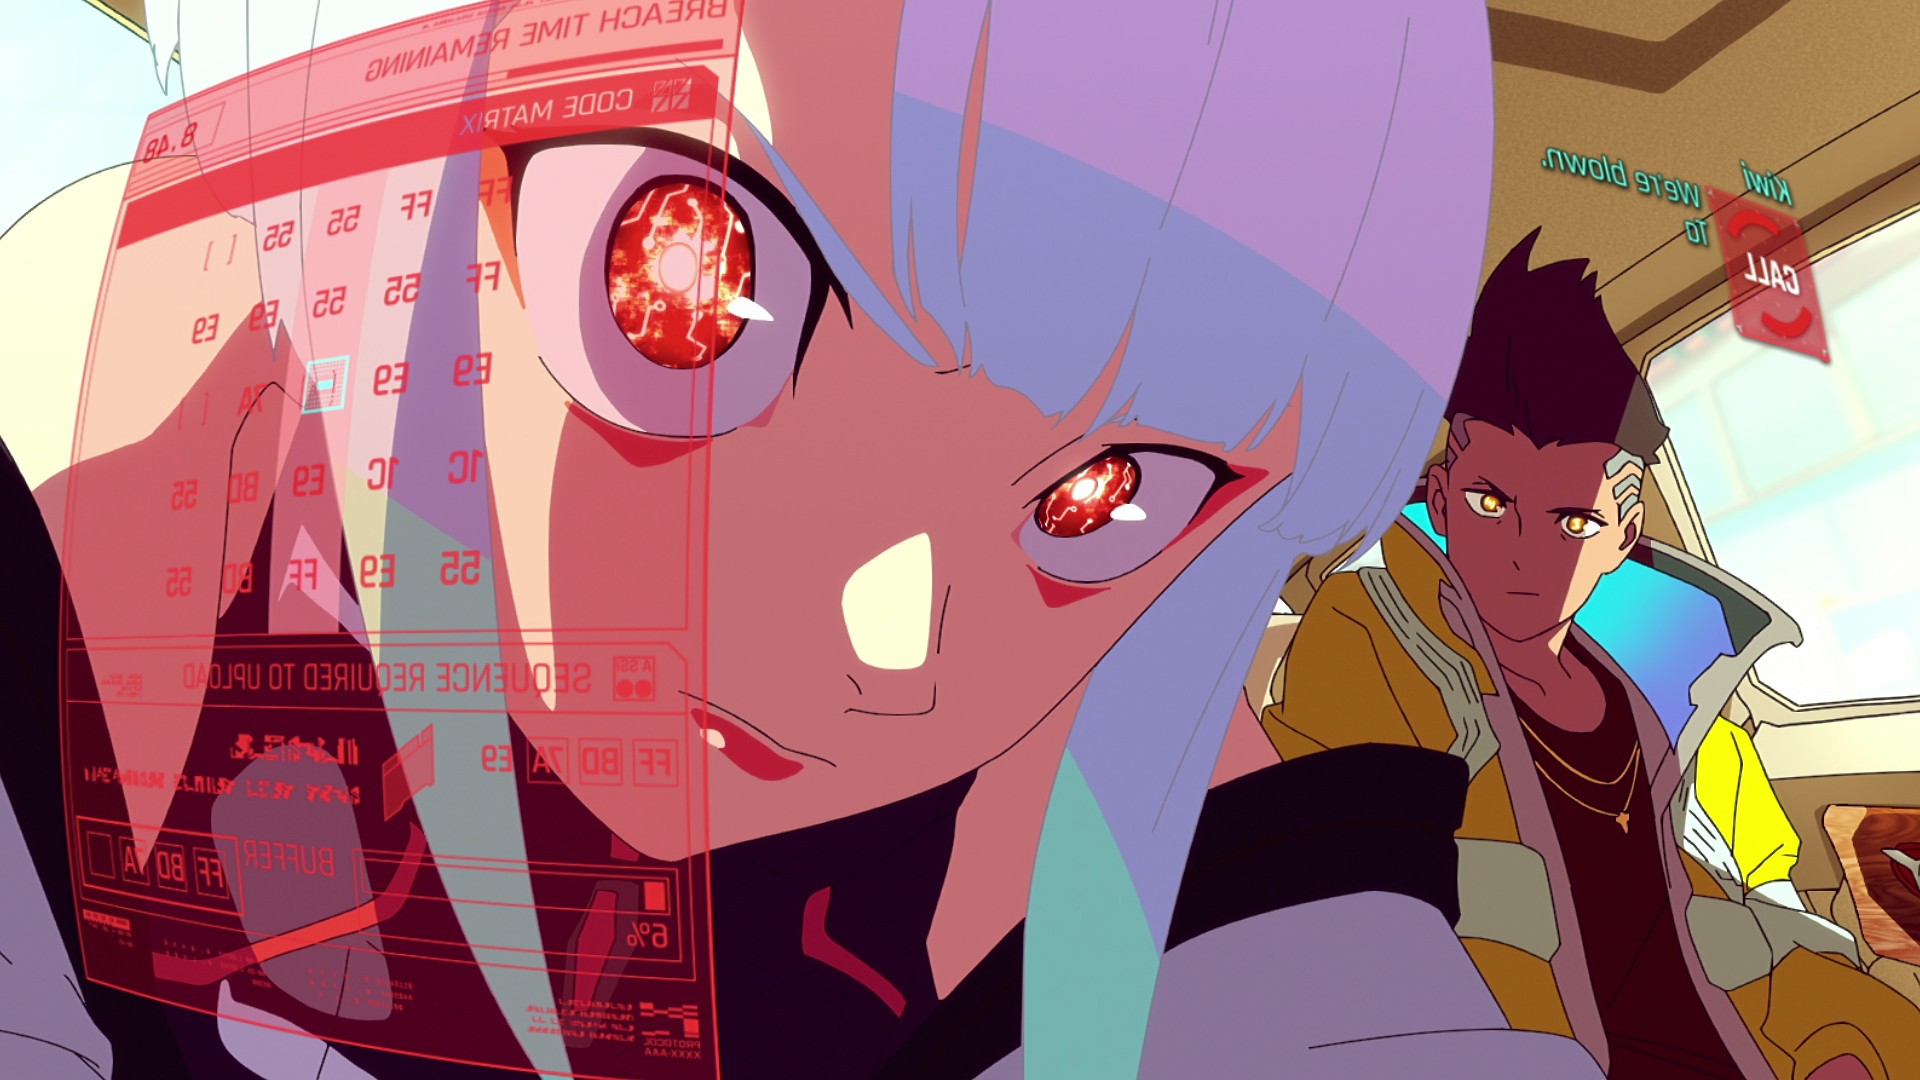 David art from Cyberpunk: Edgerunners anime 4K wallpaper download